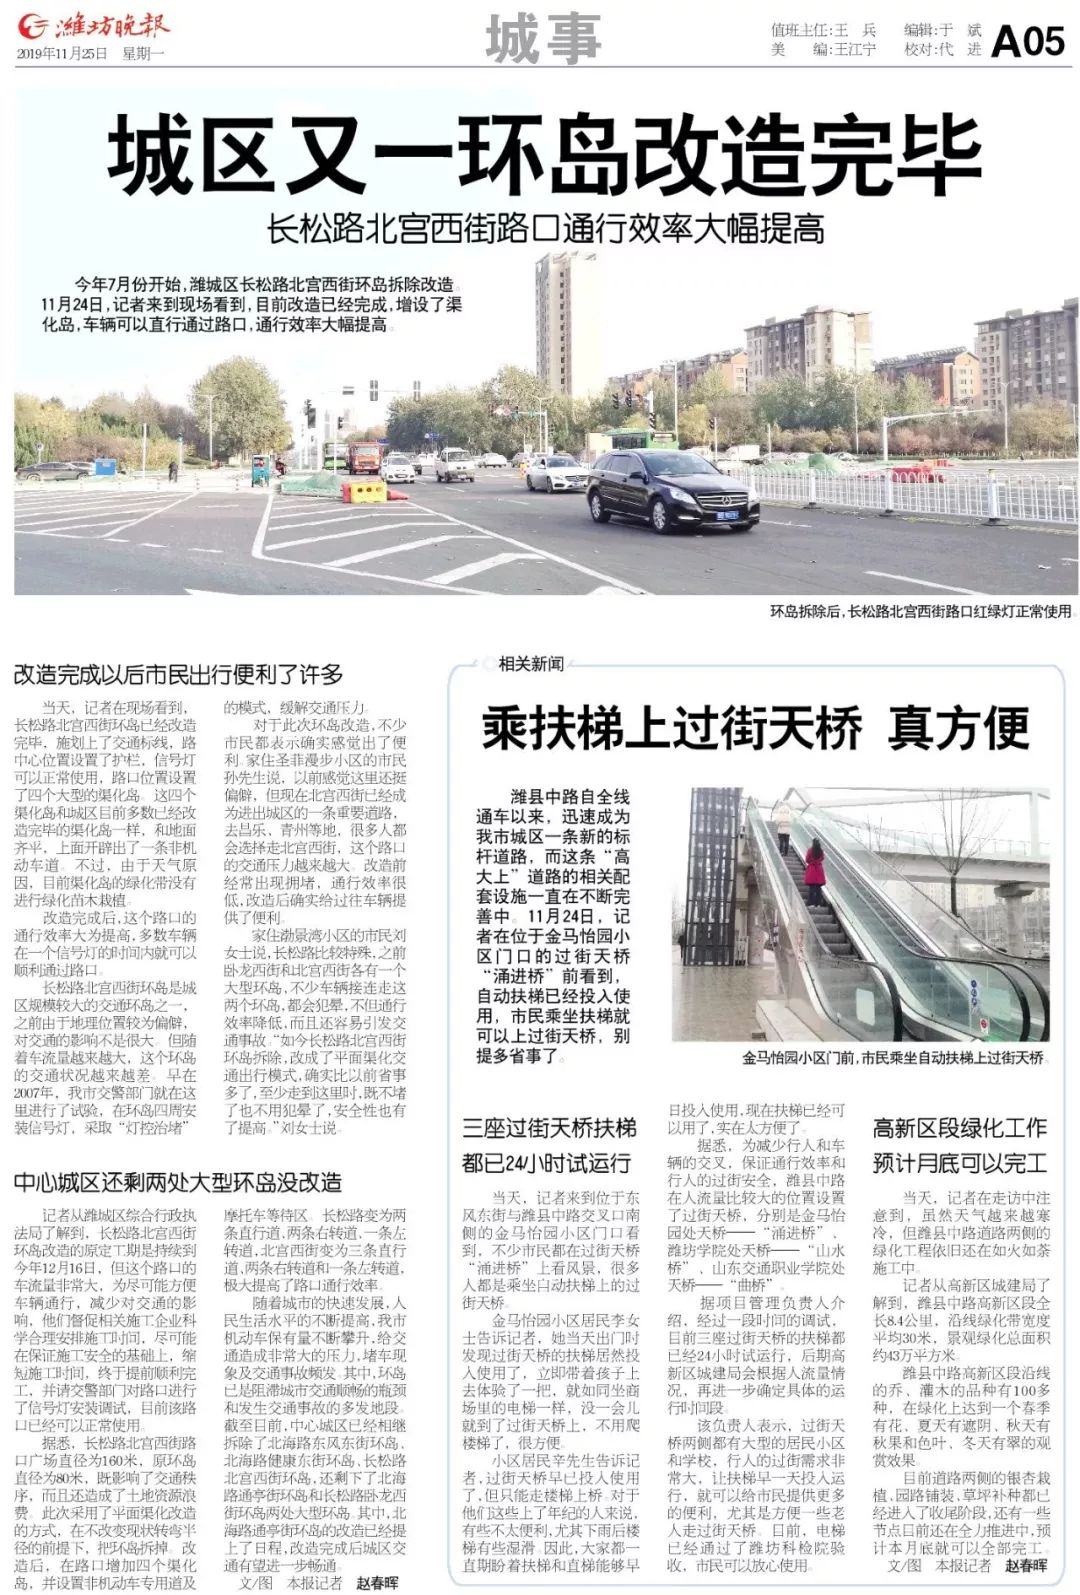 潍坊城区长松路北宫西街路口环岛改造完毕 通行效率大幅